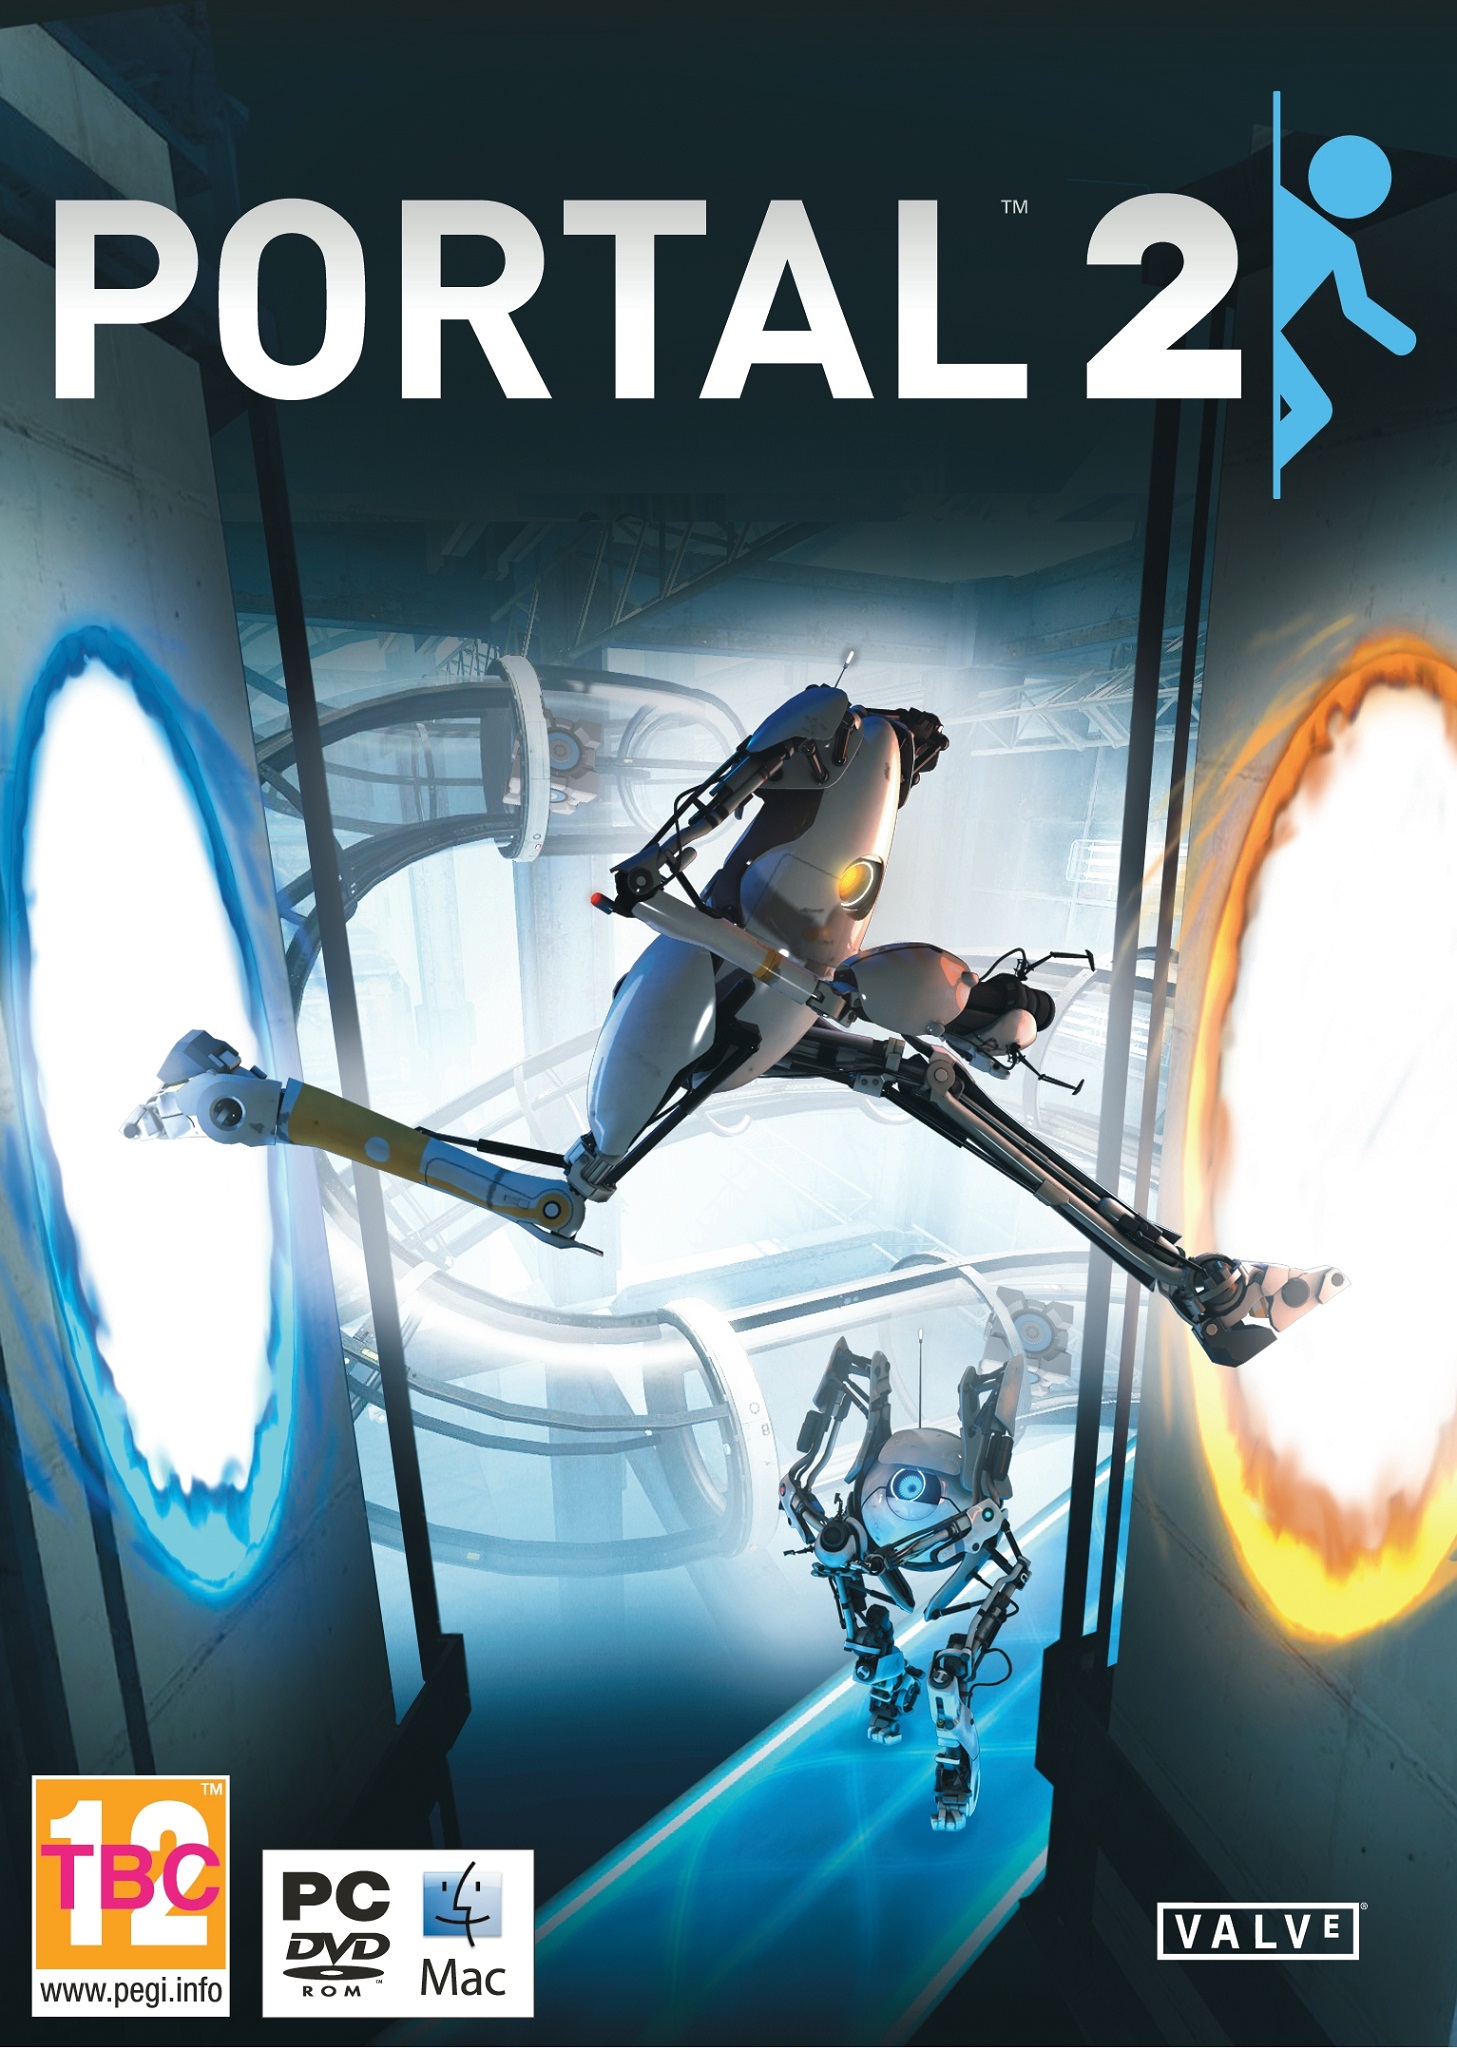 portal 2 no steam error